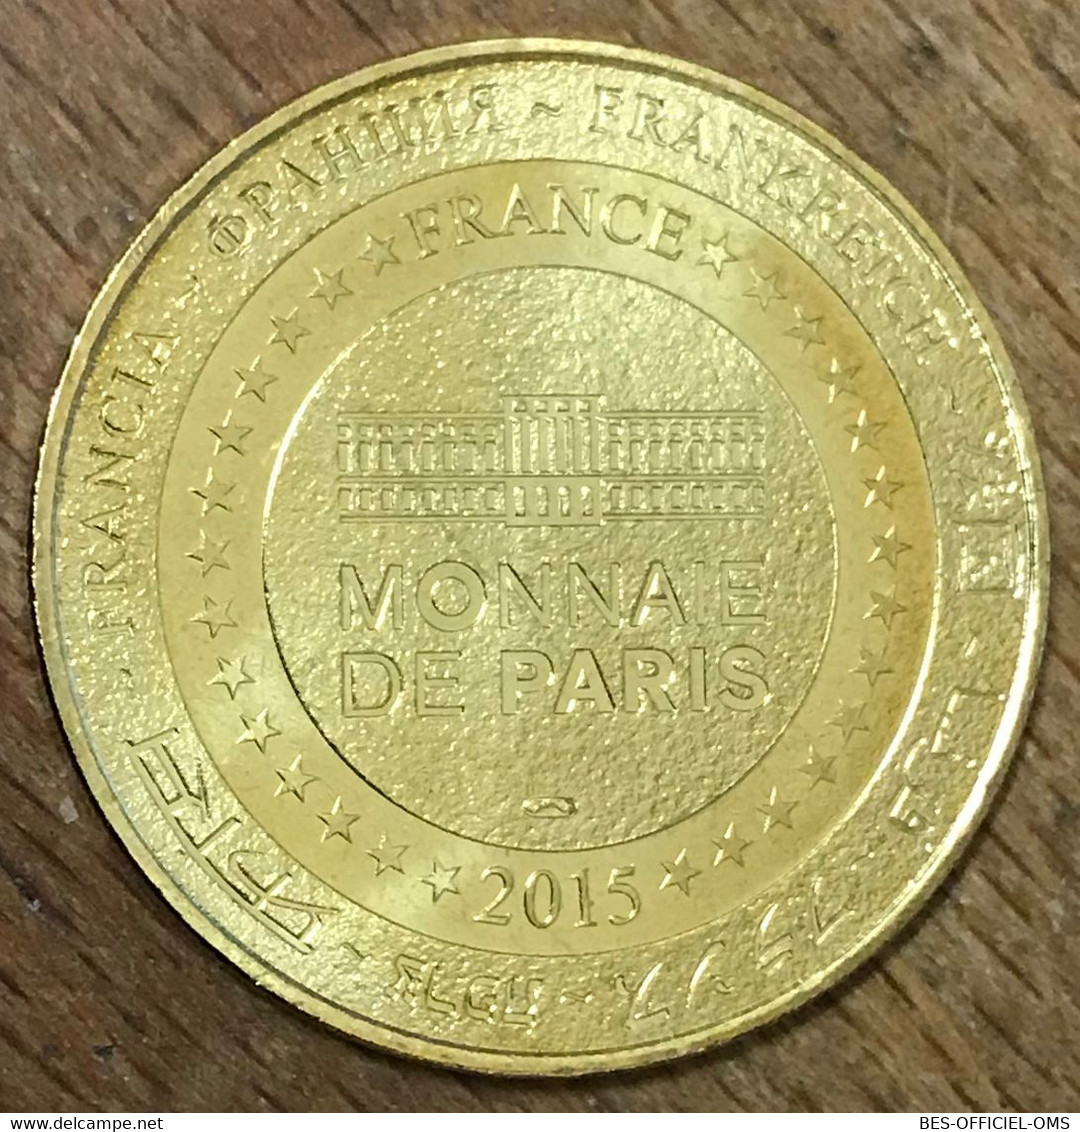 85 ABBAYE DE MAILLEZAIS MDP 2015 MÉDAILLE SOUVENIR MONNAIE DE PARIS JETON TOURISTIQUE MEDALS COINS TOKENS - 2015